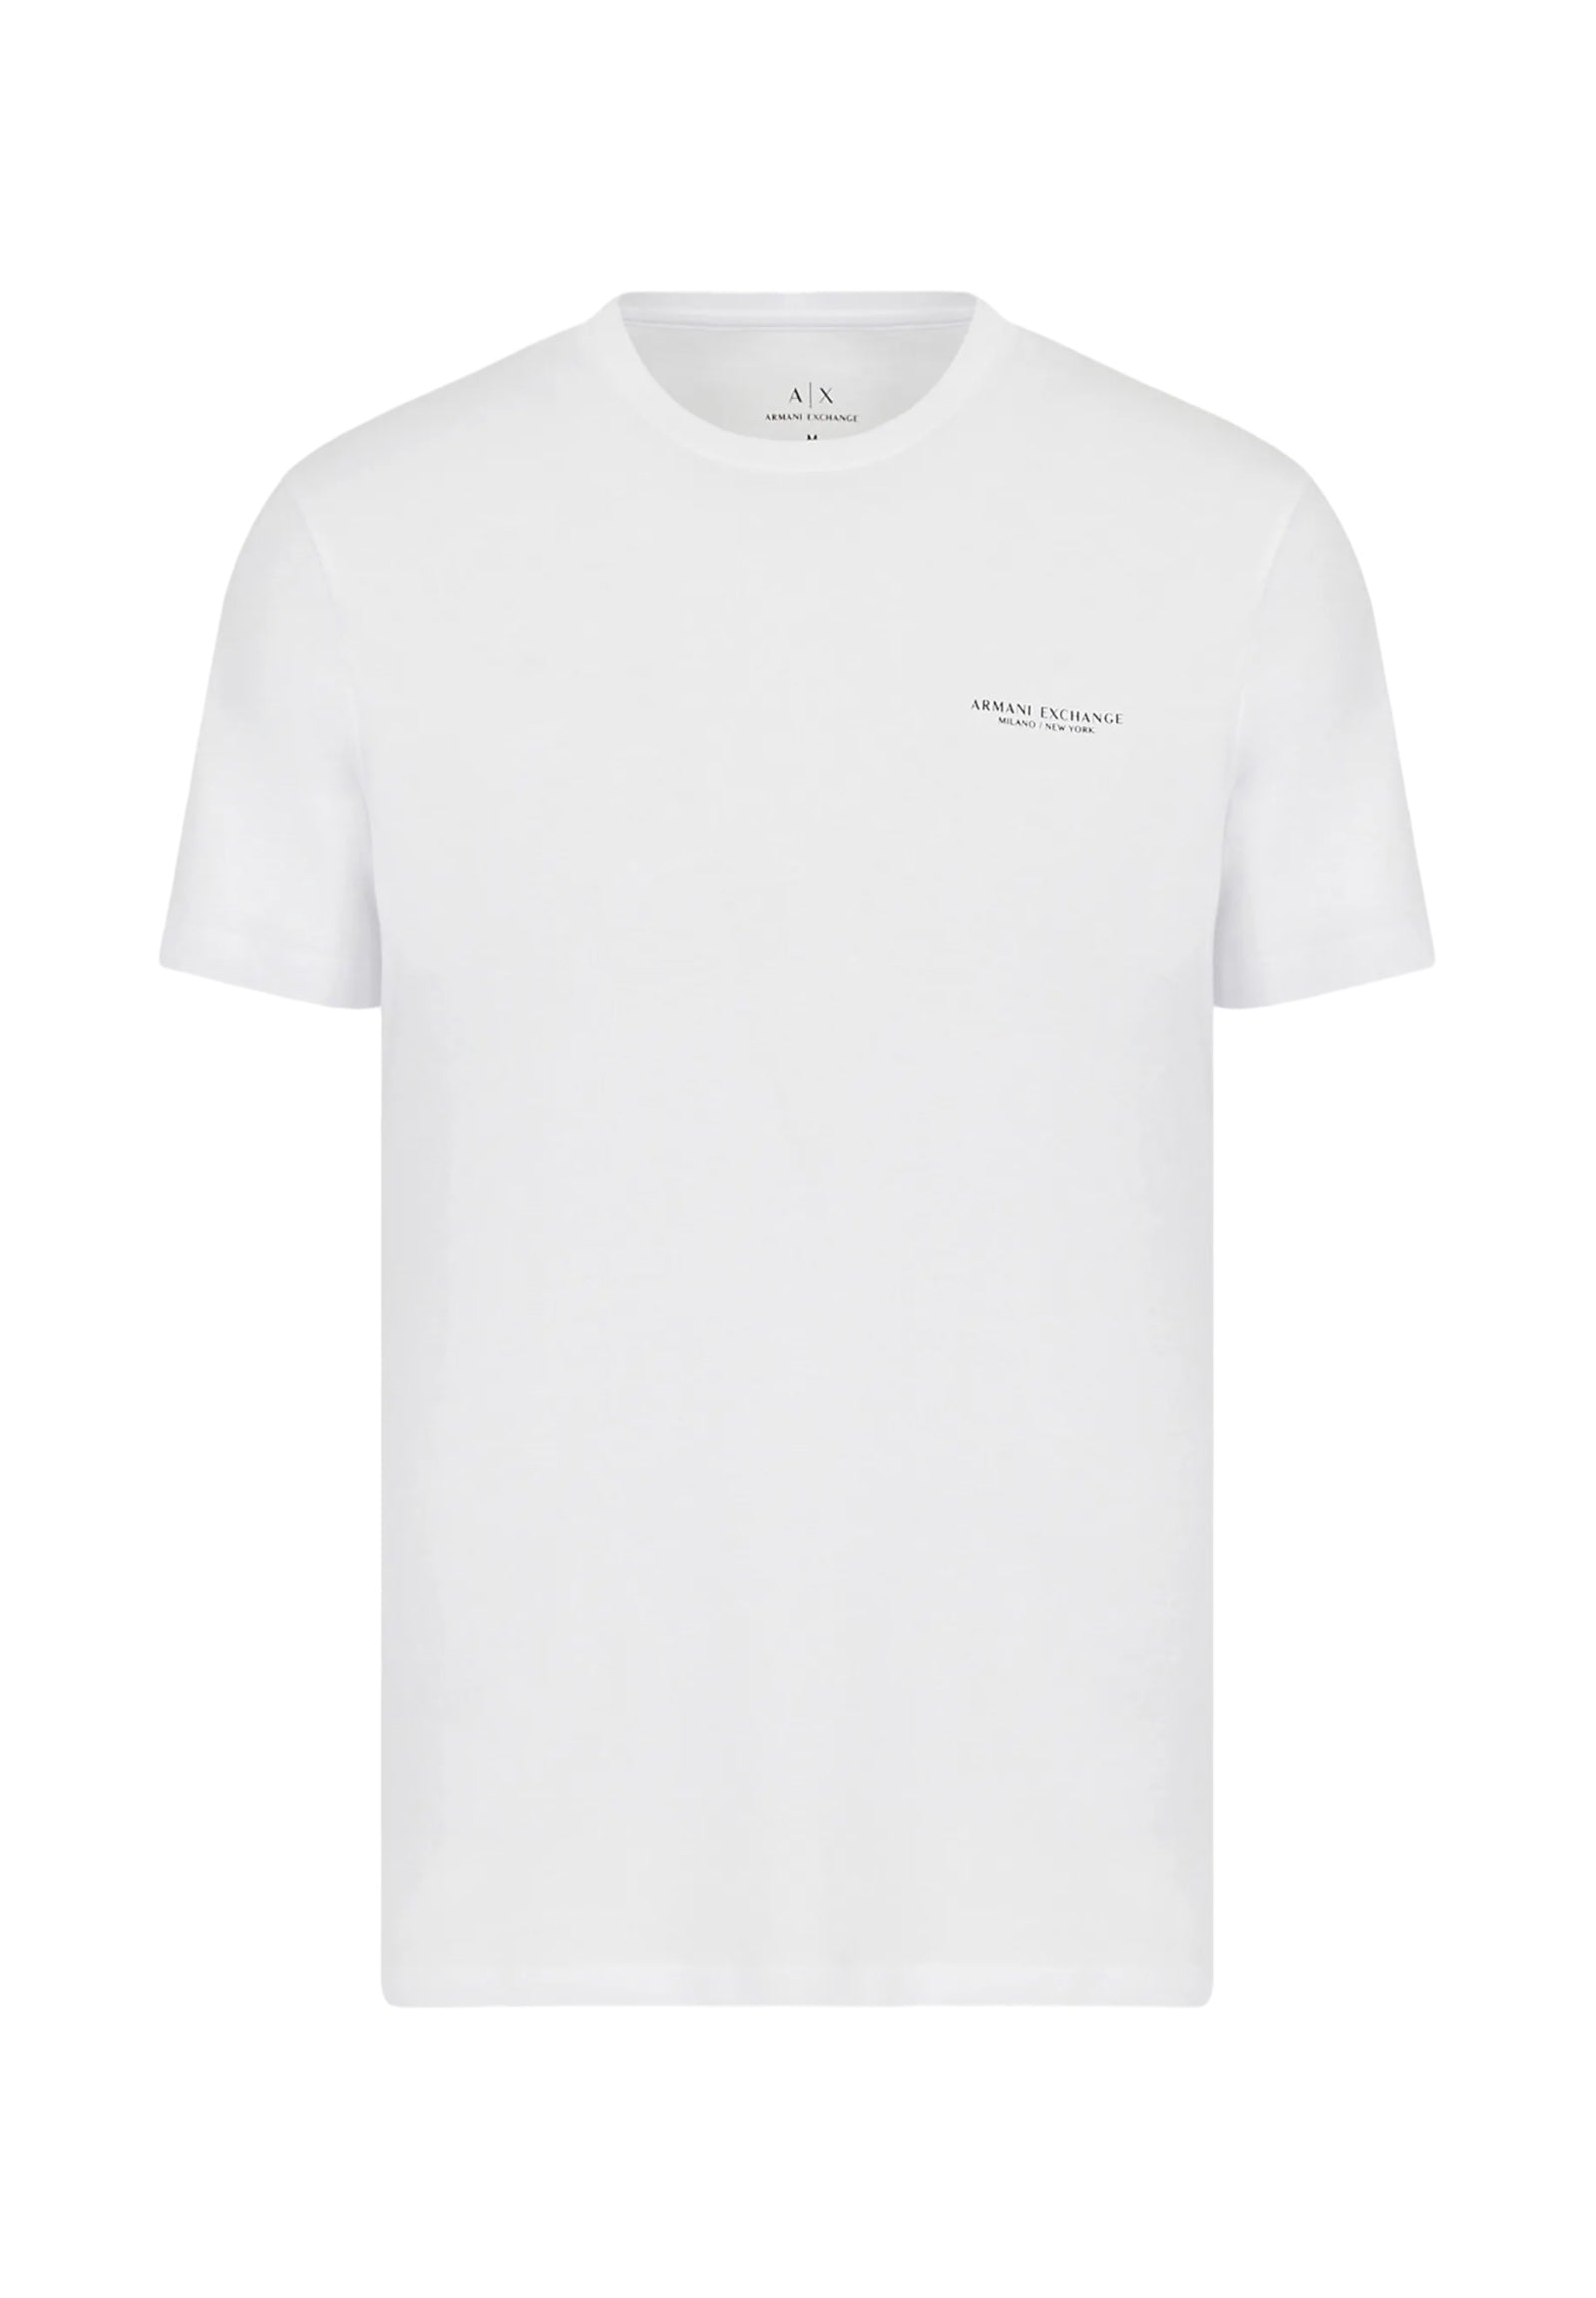 T-Shirt 8nzt91 White